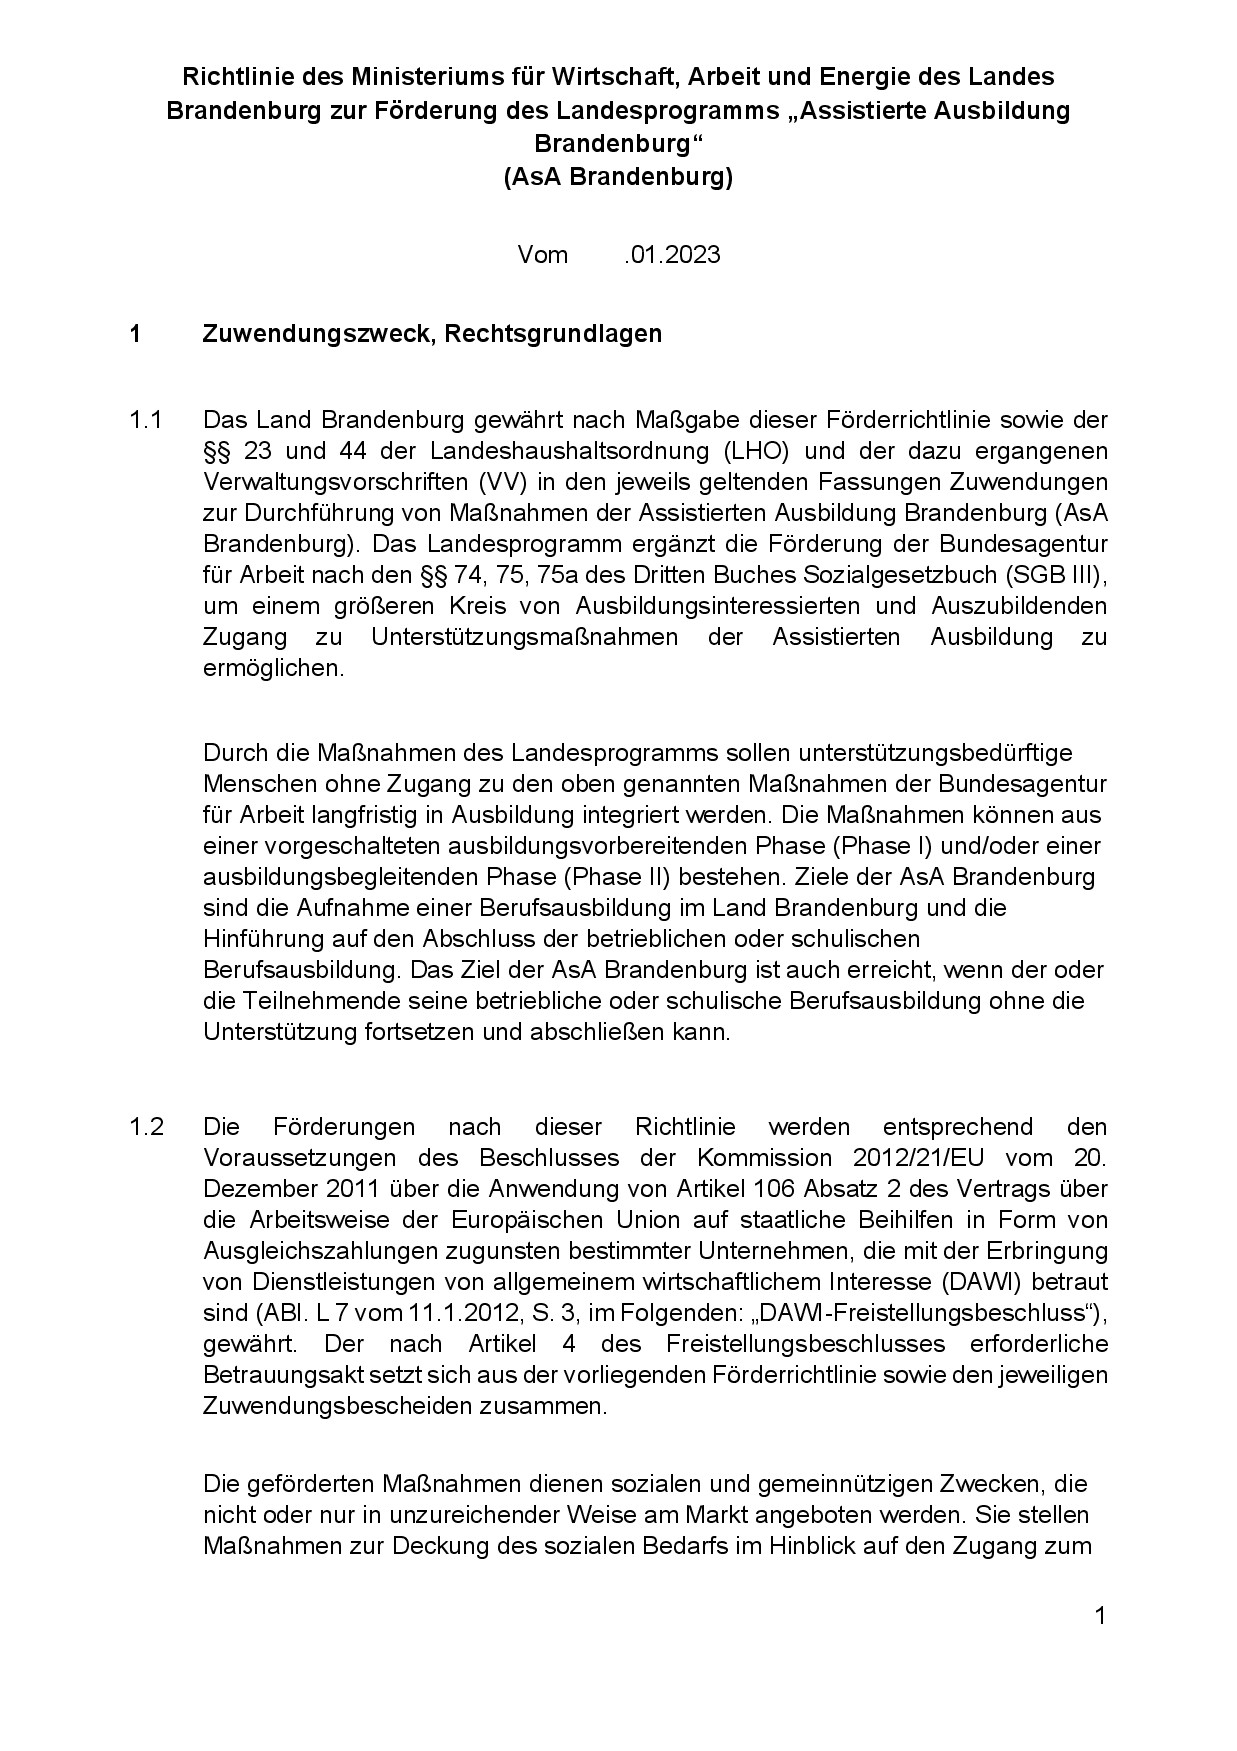 Bild vergrößern (Bild: Richtlinie des Ministeriums für Wirtschaft, Arbeit und Energie des Landes Brandenburg zur Förderung des Landesprogramms AsA Brandenburg-001.jpg)